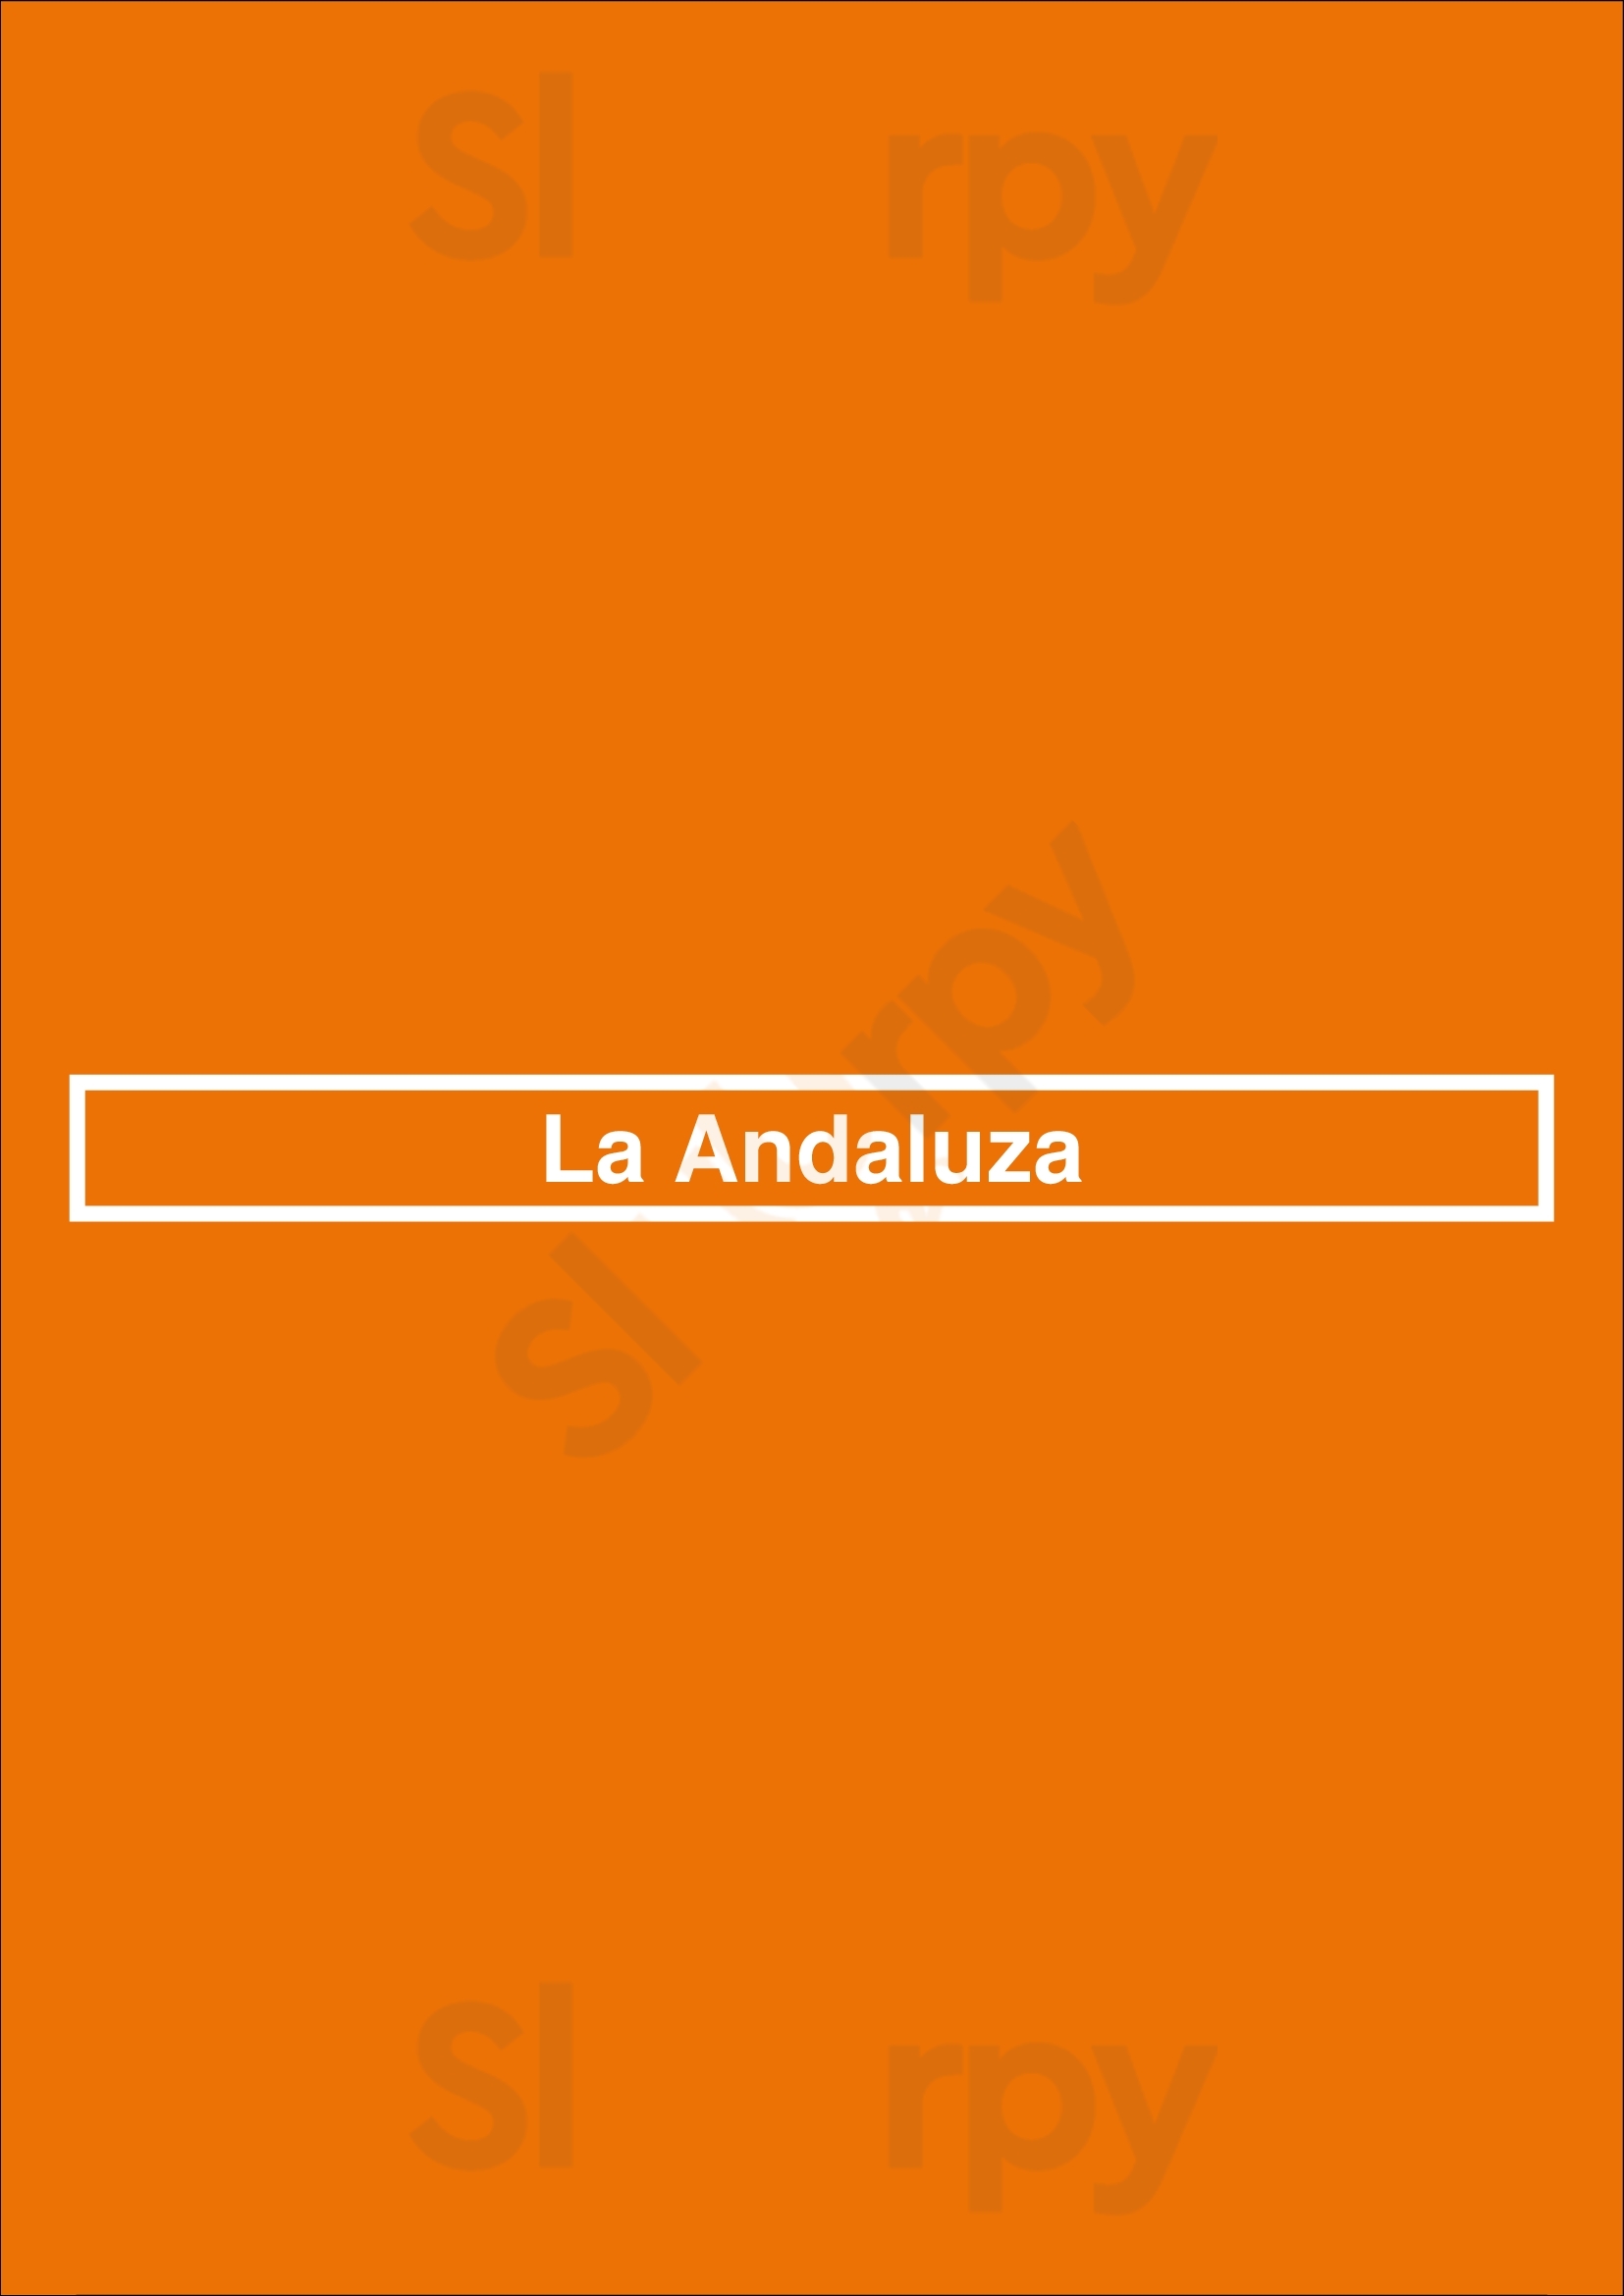 La Andaluza Almada Menu - 1